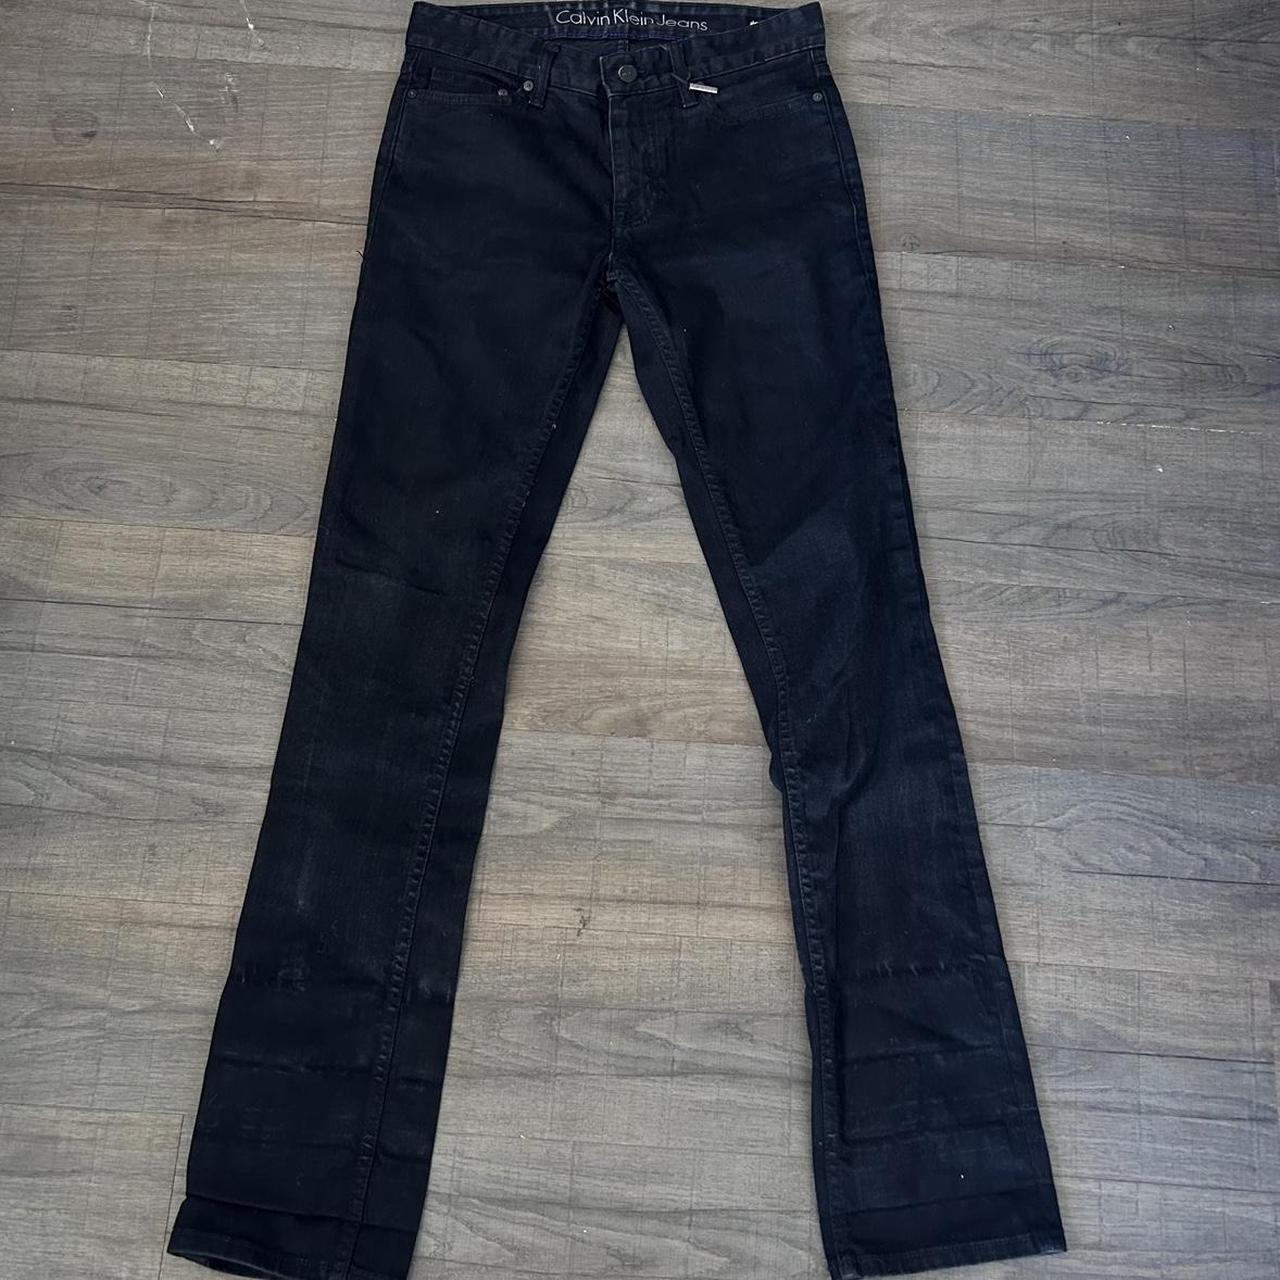 Vintage Calvin Klein black jeans (slight fade) Slim... - Depop